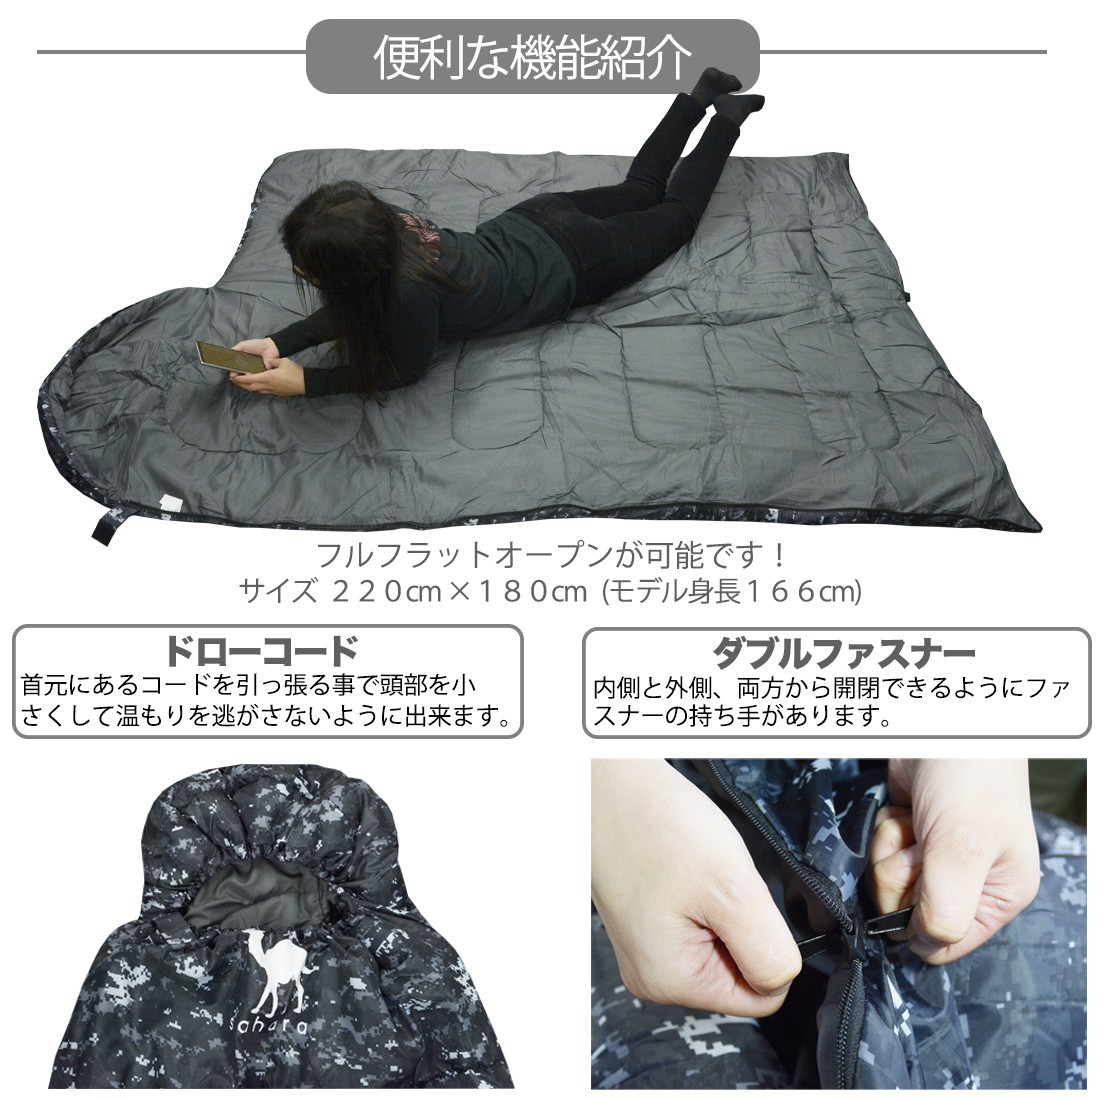 寝袋 シュラフ 封筒型 -15度 デジタル迷彩 デザート 新品未使用 キャンプ シュラフ 軽量